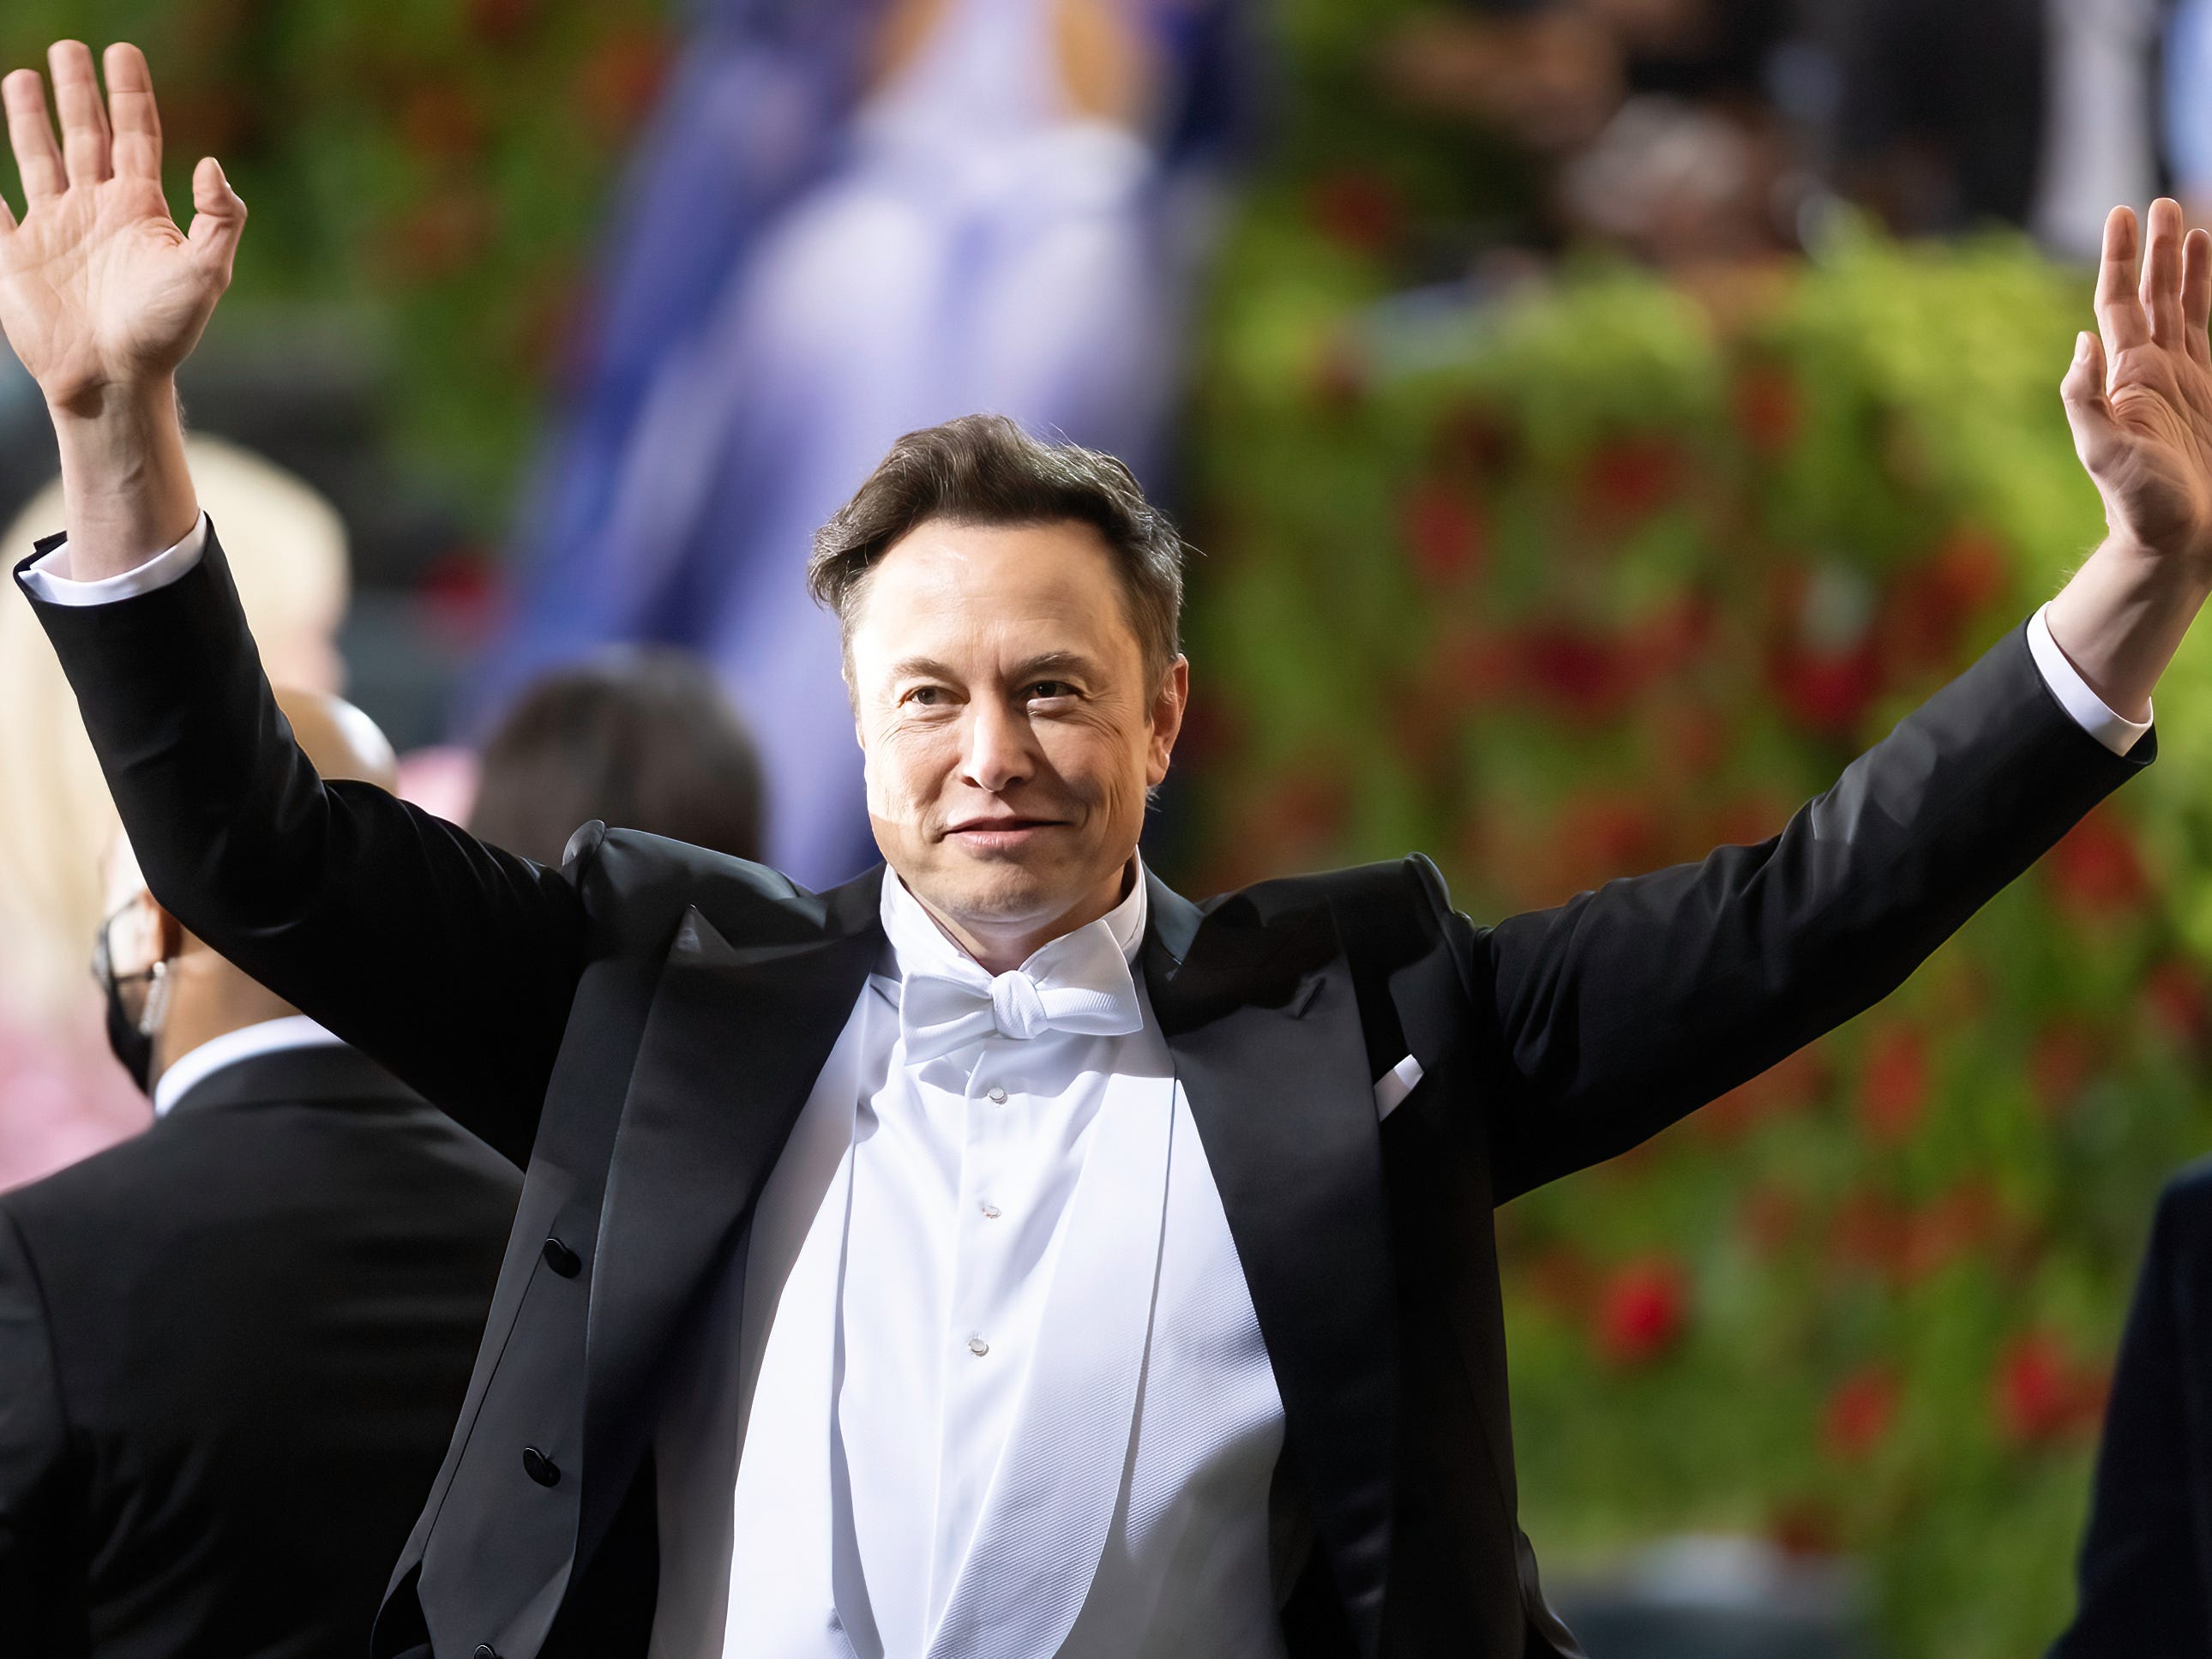 Elon Musk begrüßt die Zuschauer bei der Met Gala 2022 mit winkenden Händen